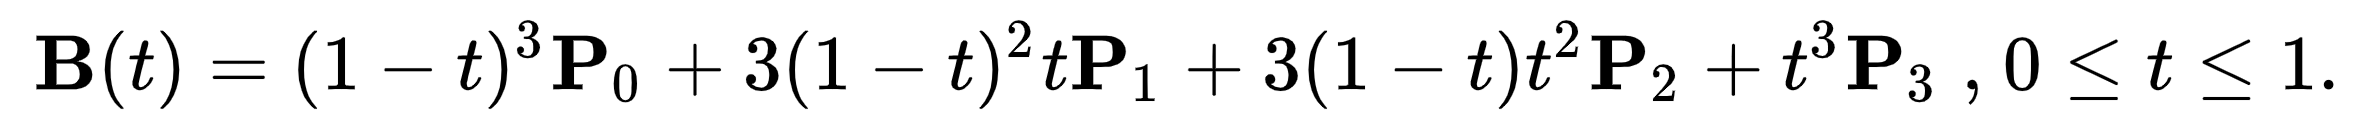 cubic bezier equation